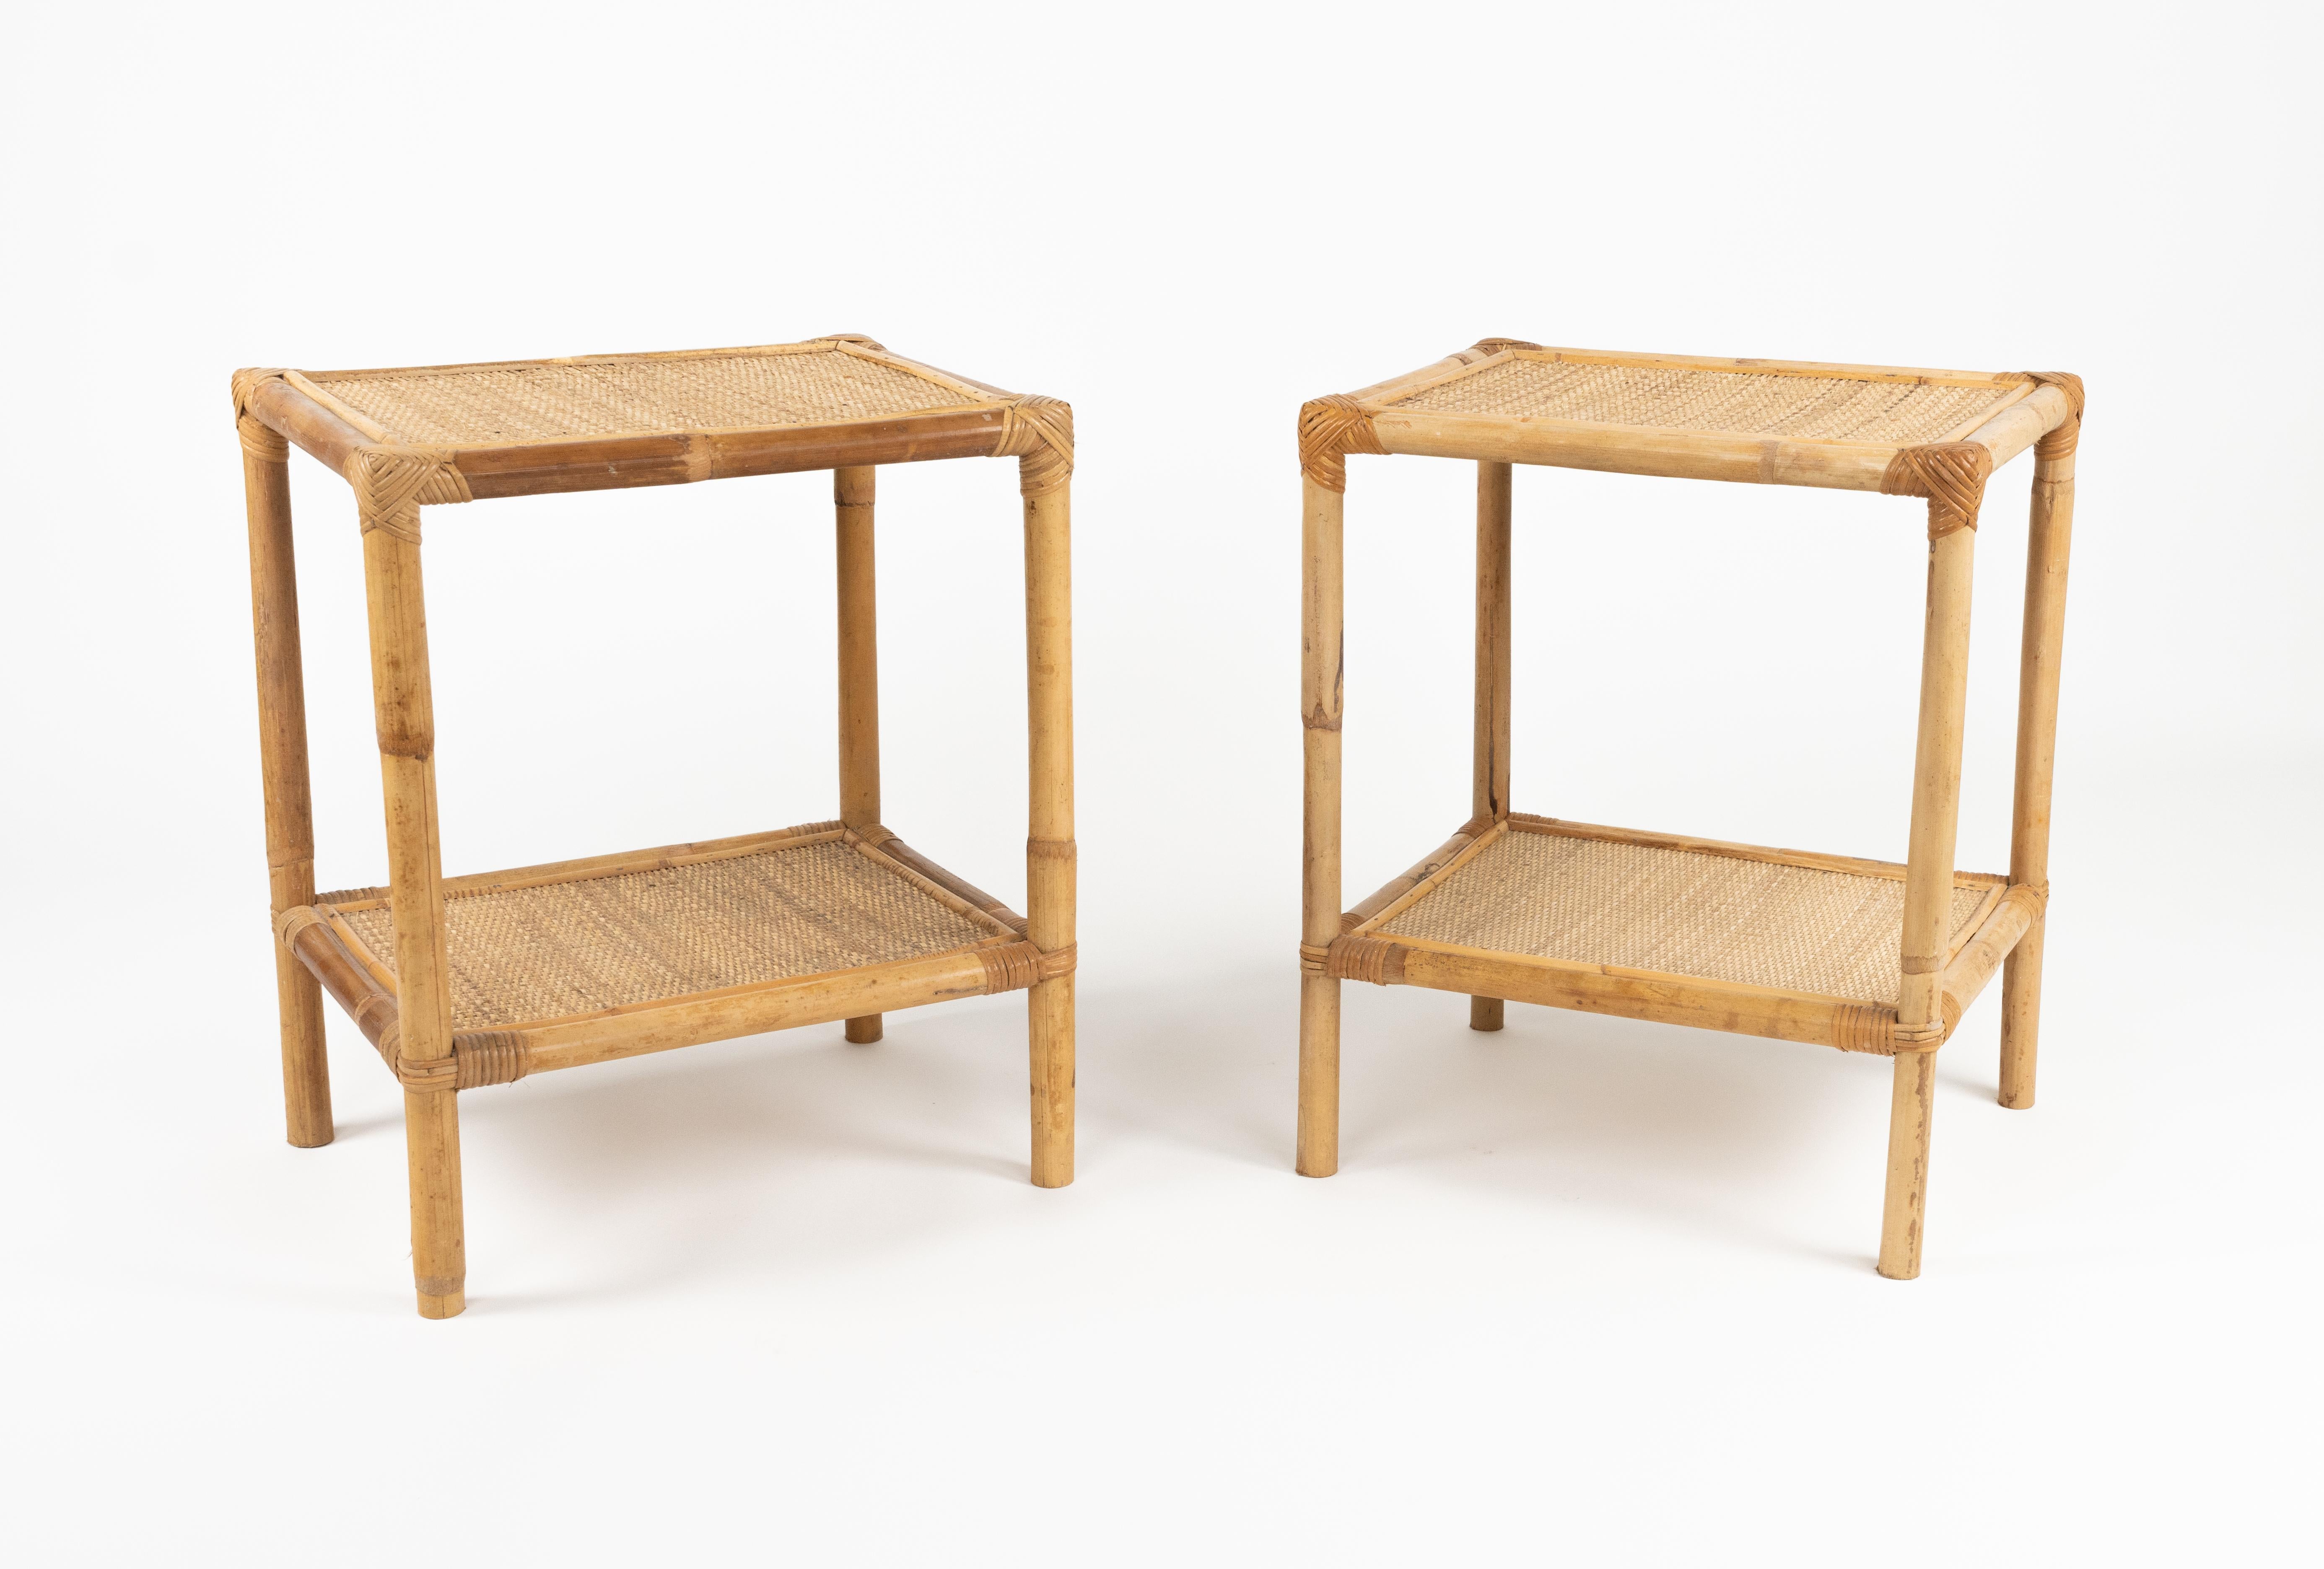 Magnifique paire de tables de chevet ou de tables de nuit en bambou, rotin et osier, datant du milieu du siècle dernier.  

Fabriqué en Italie dans les années 1970.